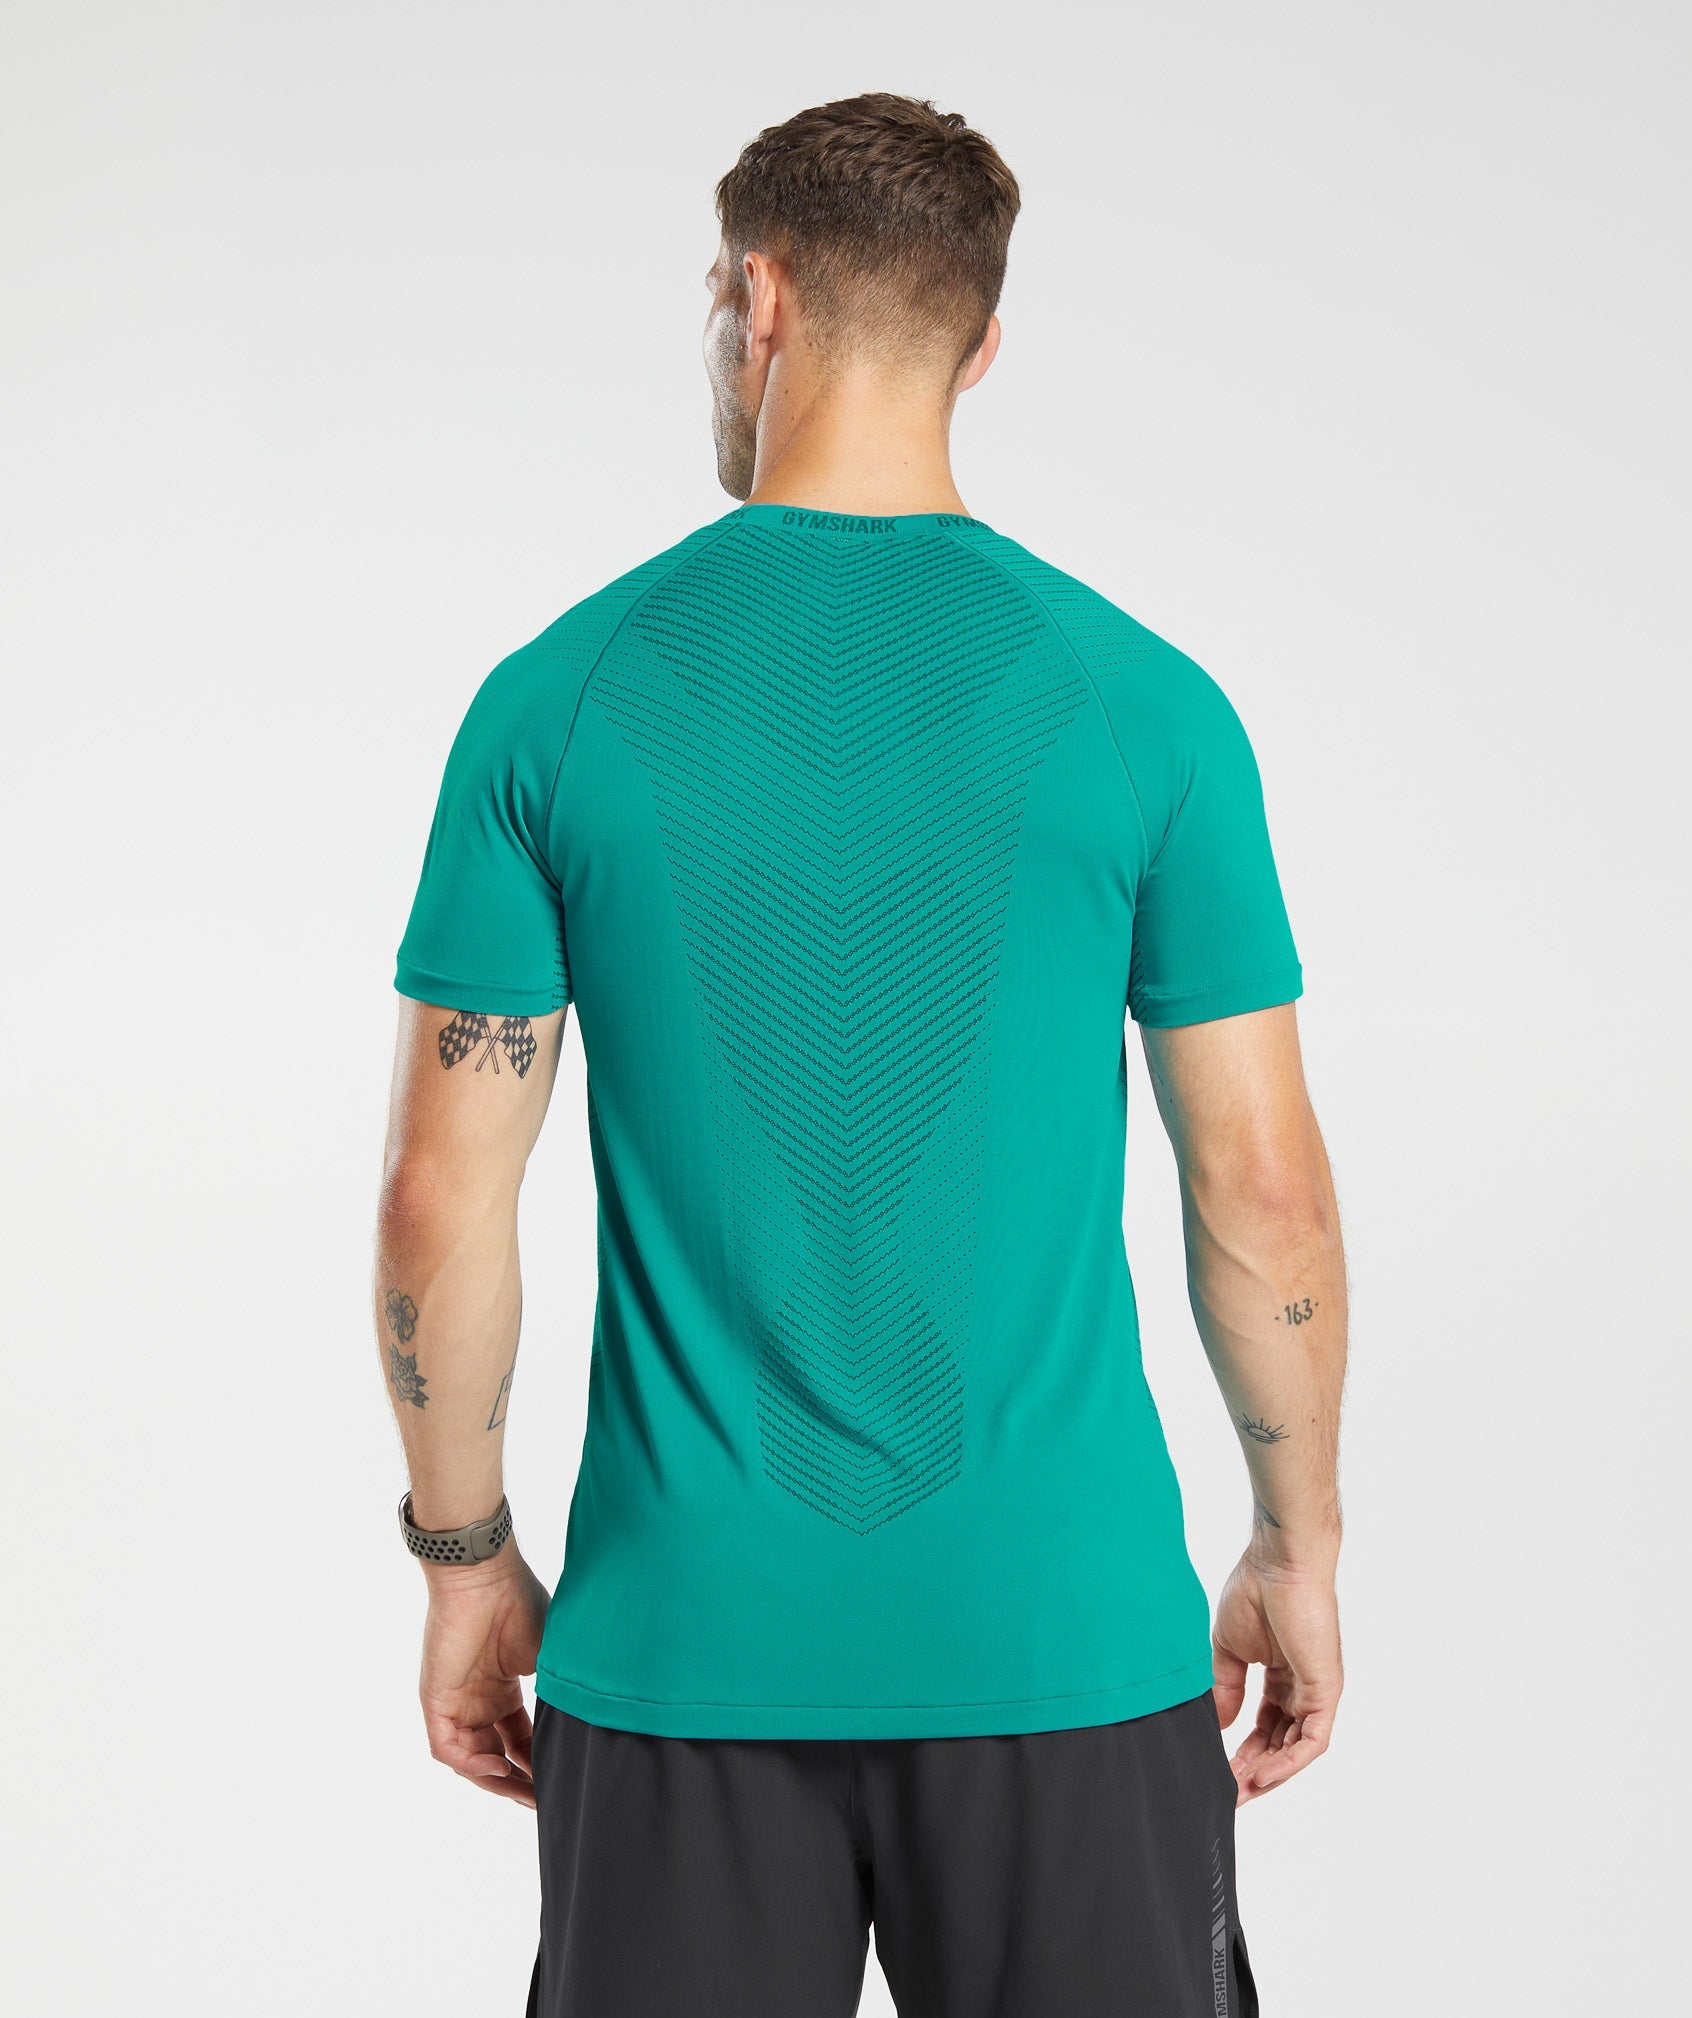 Camiseta Gymshark Portugal Apex Homem Laranja Tamanho XL Saldos